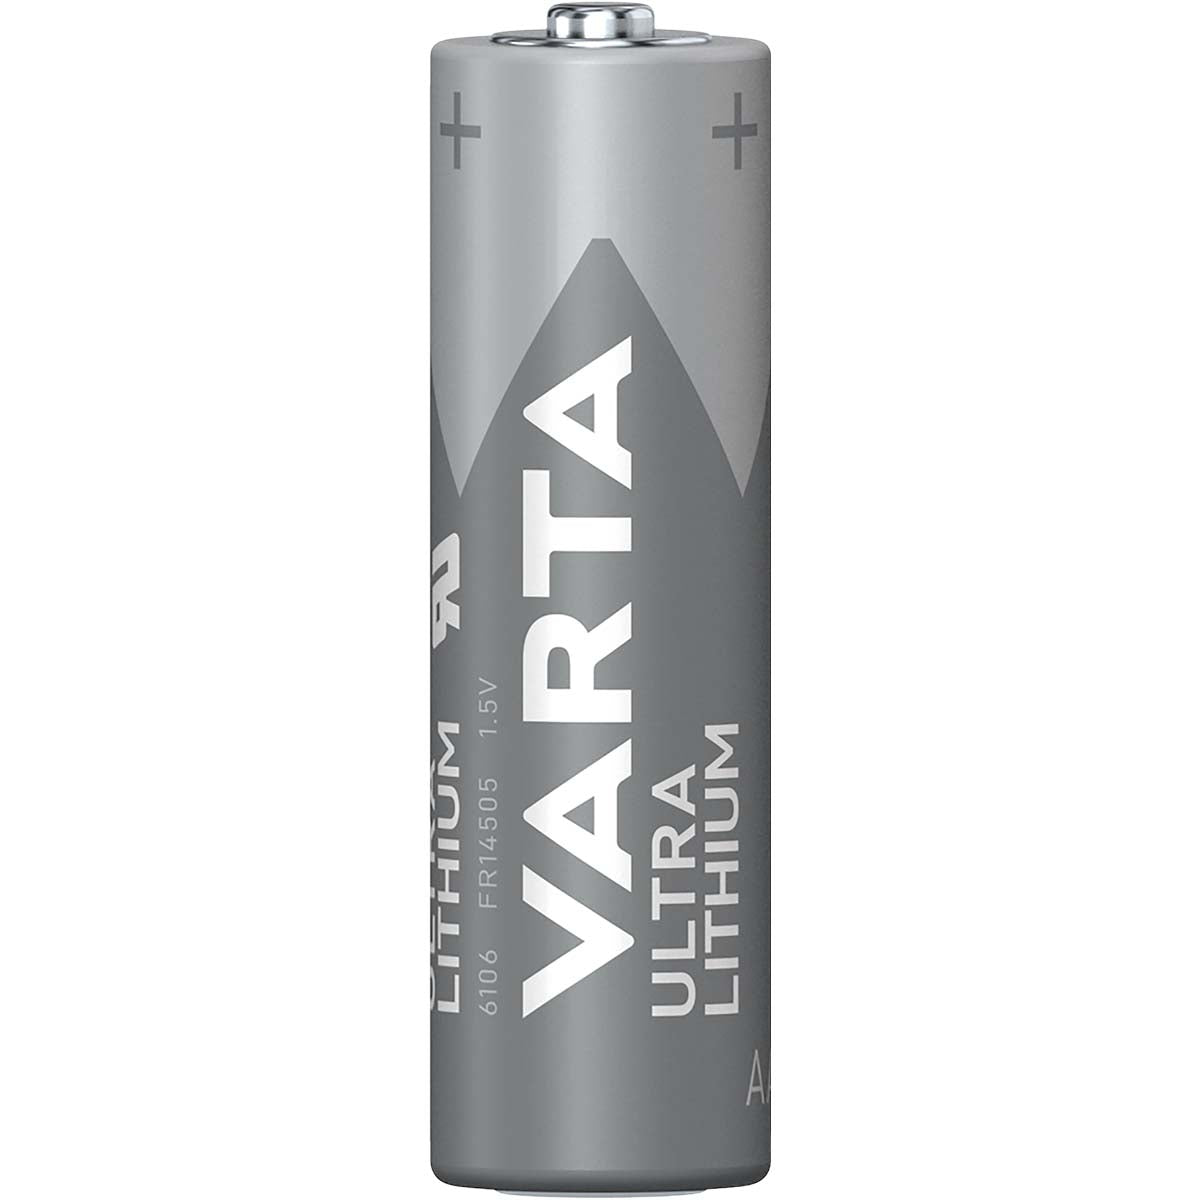 Lithium-Batterie AA | 1.5 V DC | 2900 mAh | 4-Blister-Karte | Grau / Silber